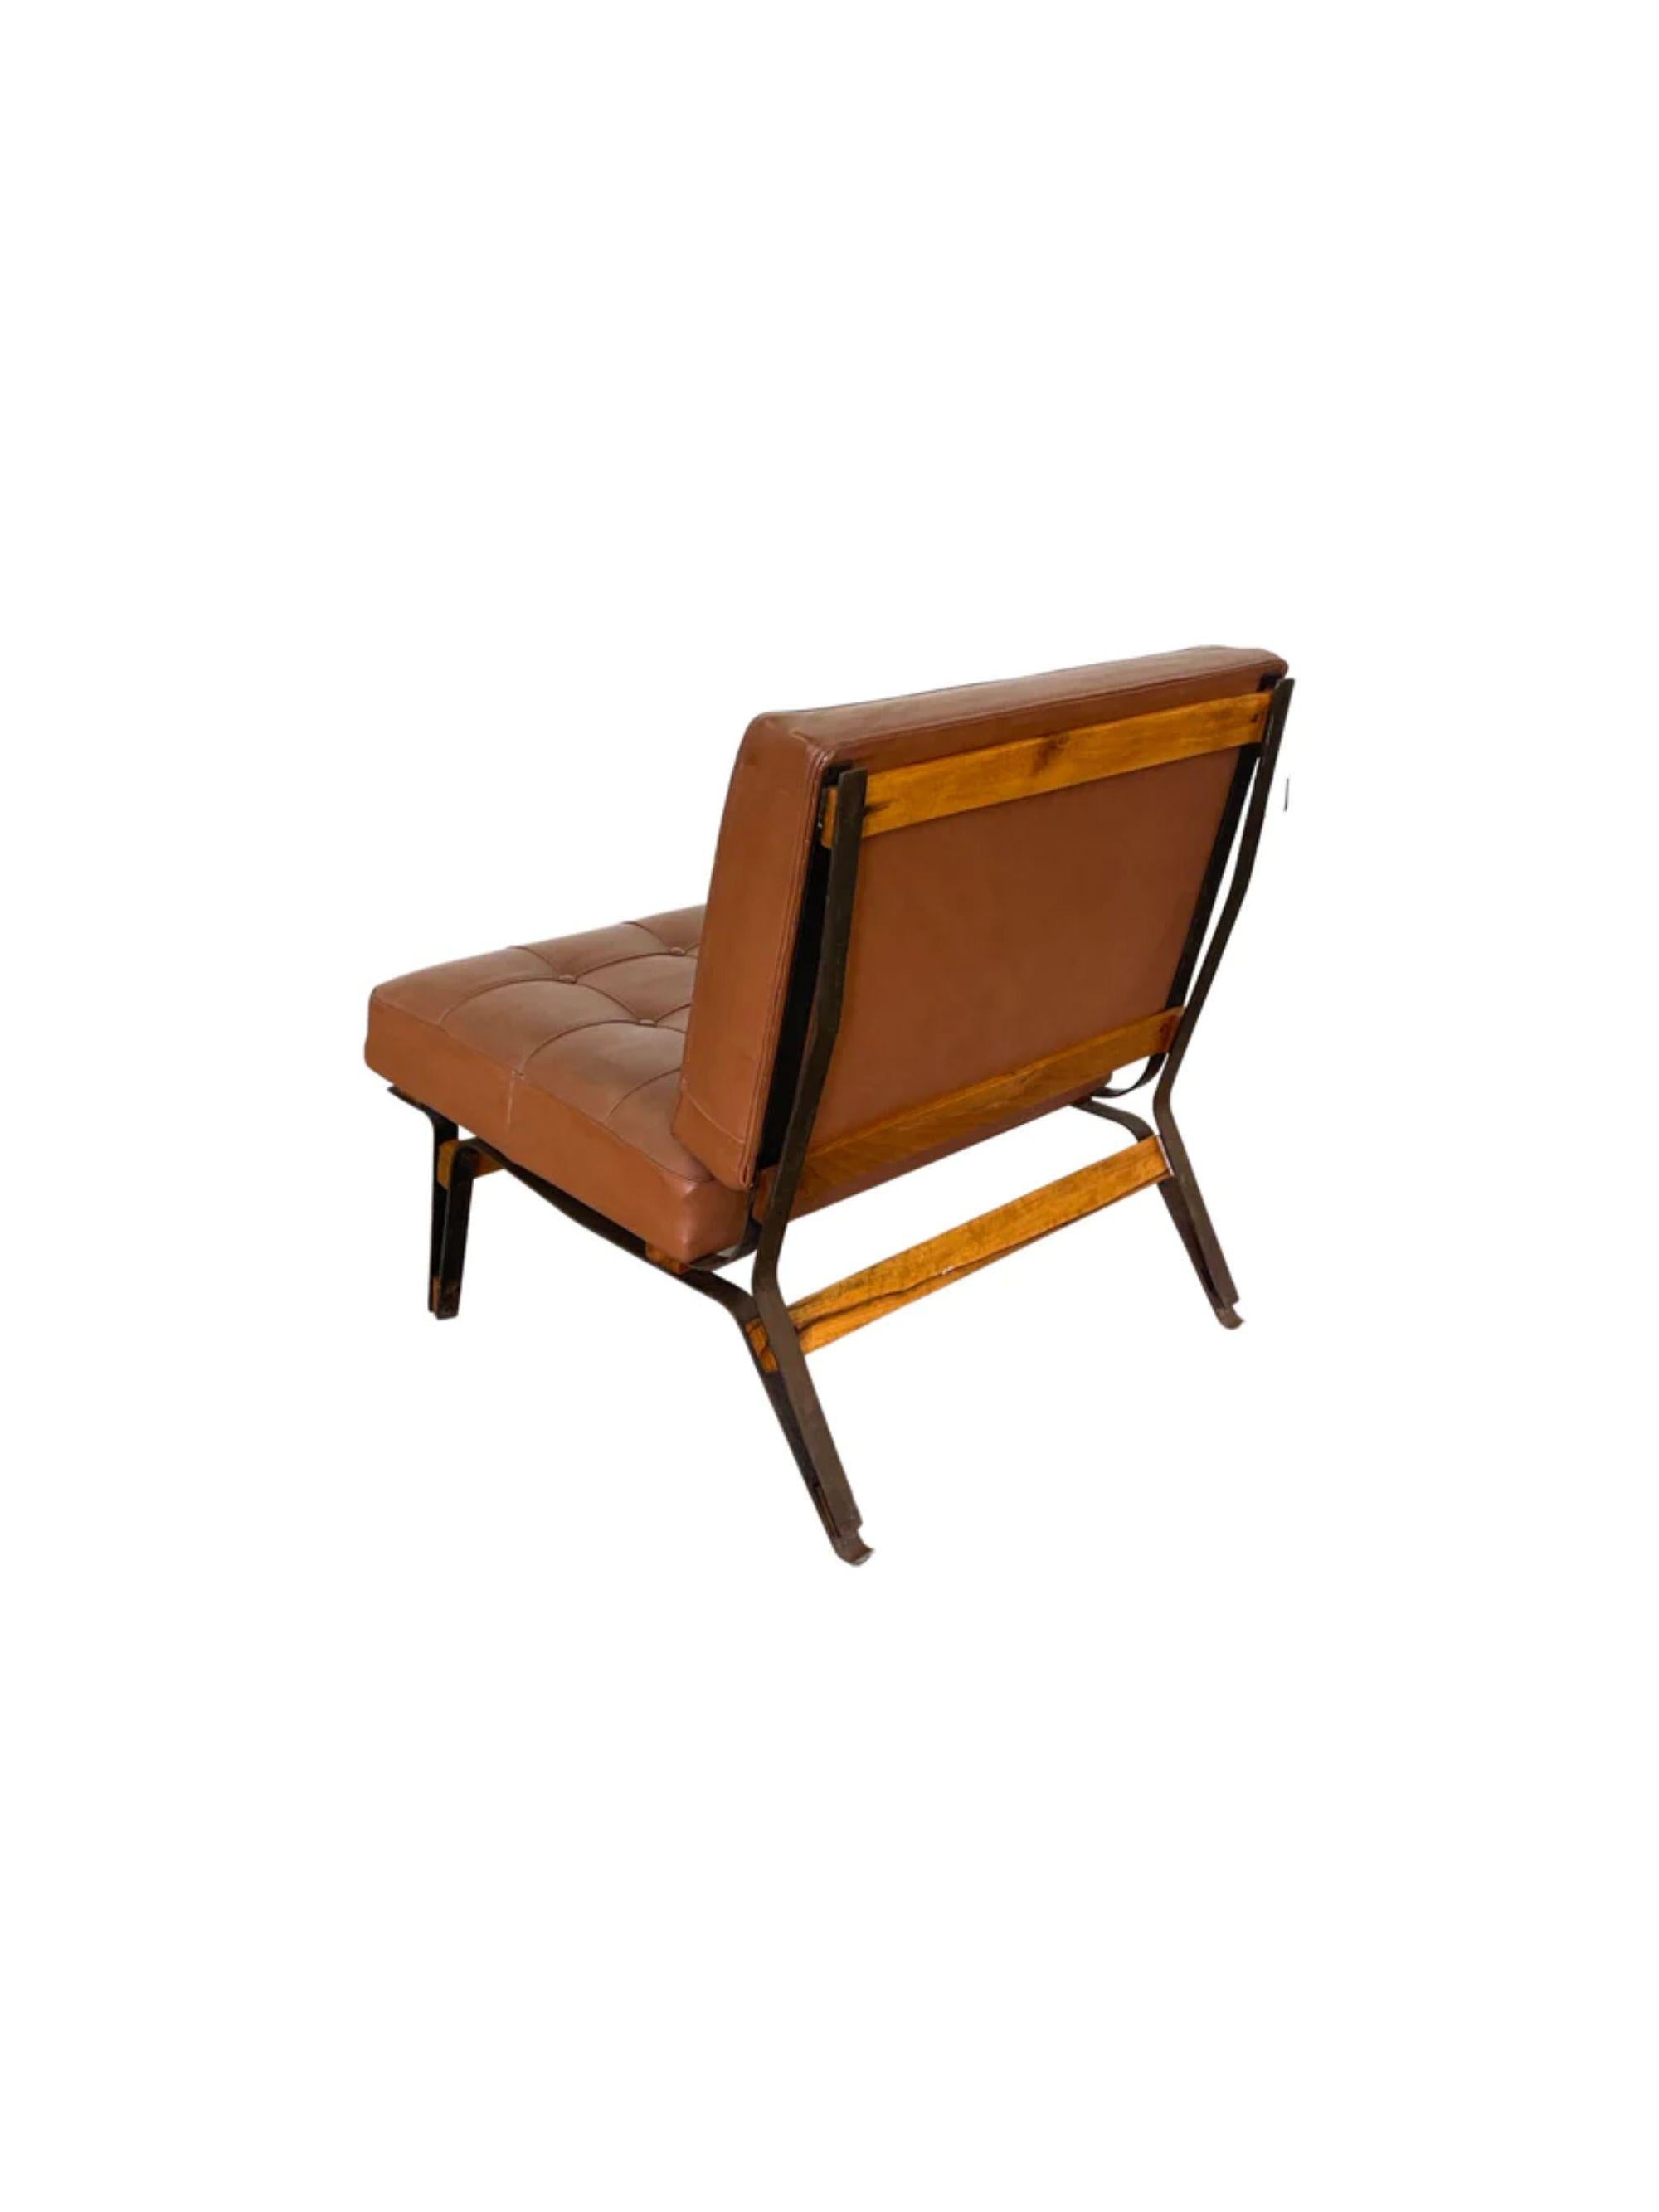 Paire de rares chaises longues Ico Parisi modèle 856 pour Cassina, Italie, années 1950.

Dimensions : 30